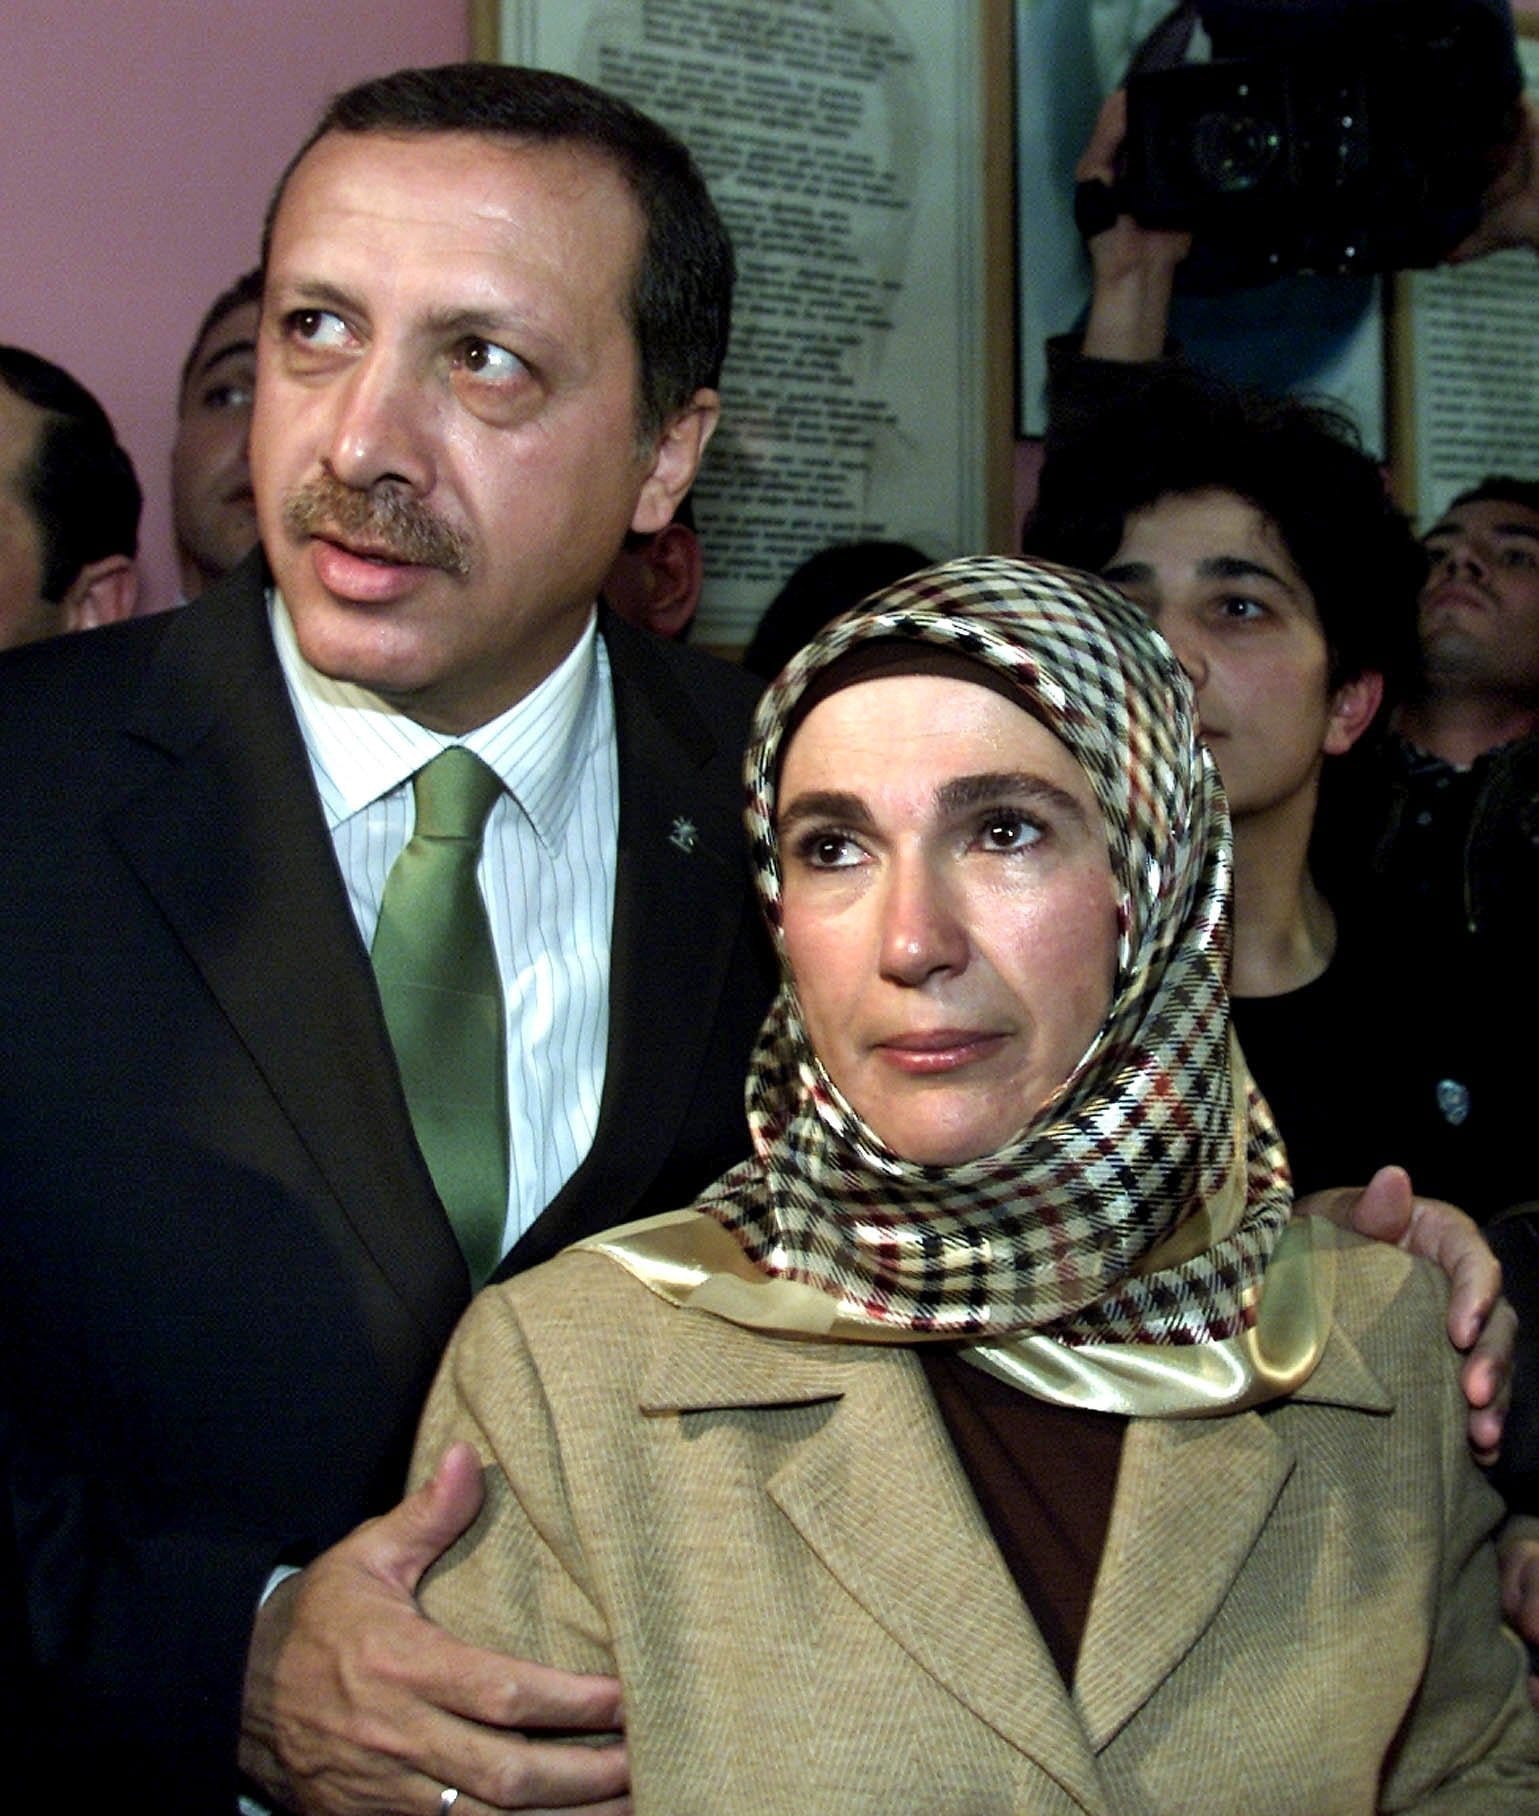 Während seiner gesamten politischen Karriere war seine Frau Emine an seiner Seite. Hier ist das Paar vor Erdogans erster Wahl zum Ministerpräsident im Jahr 2002 in einem Wahllokal zu sehen.